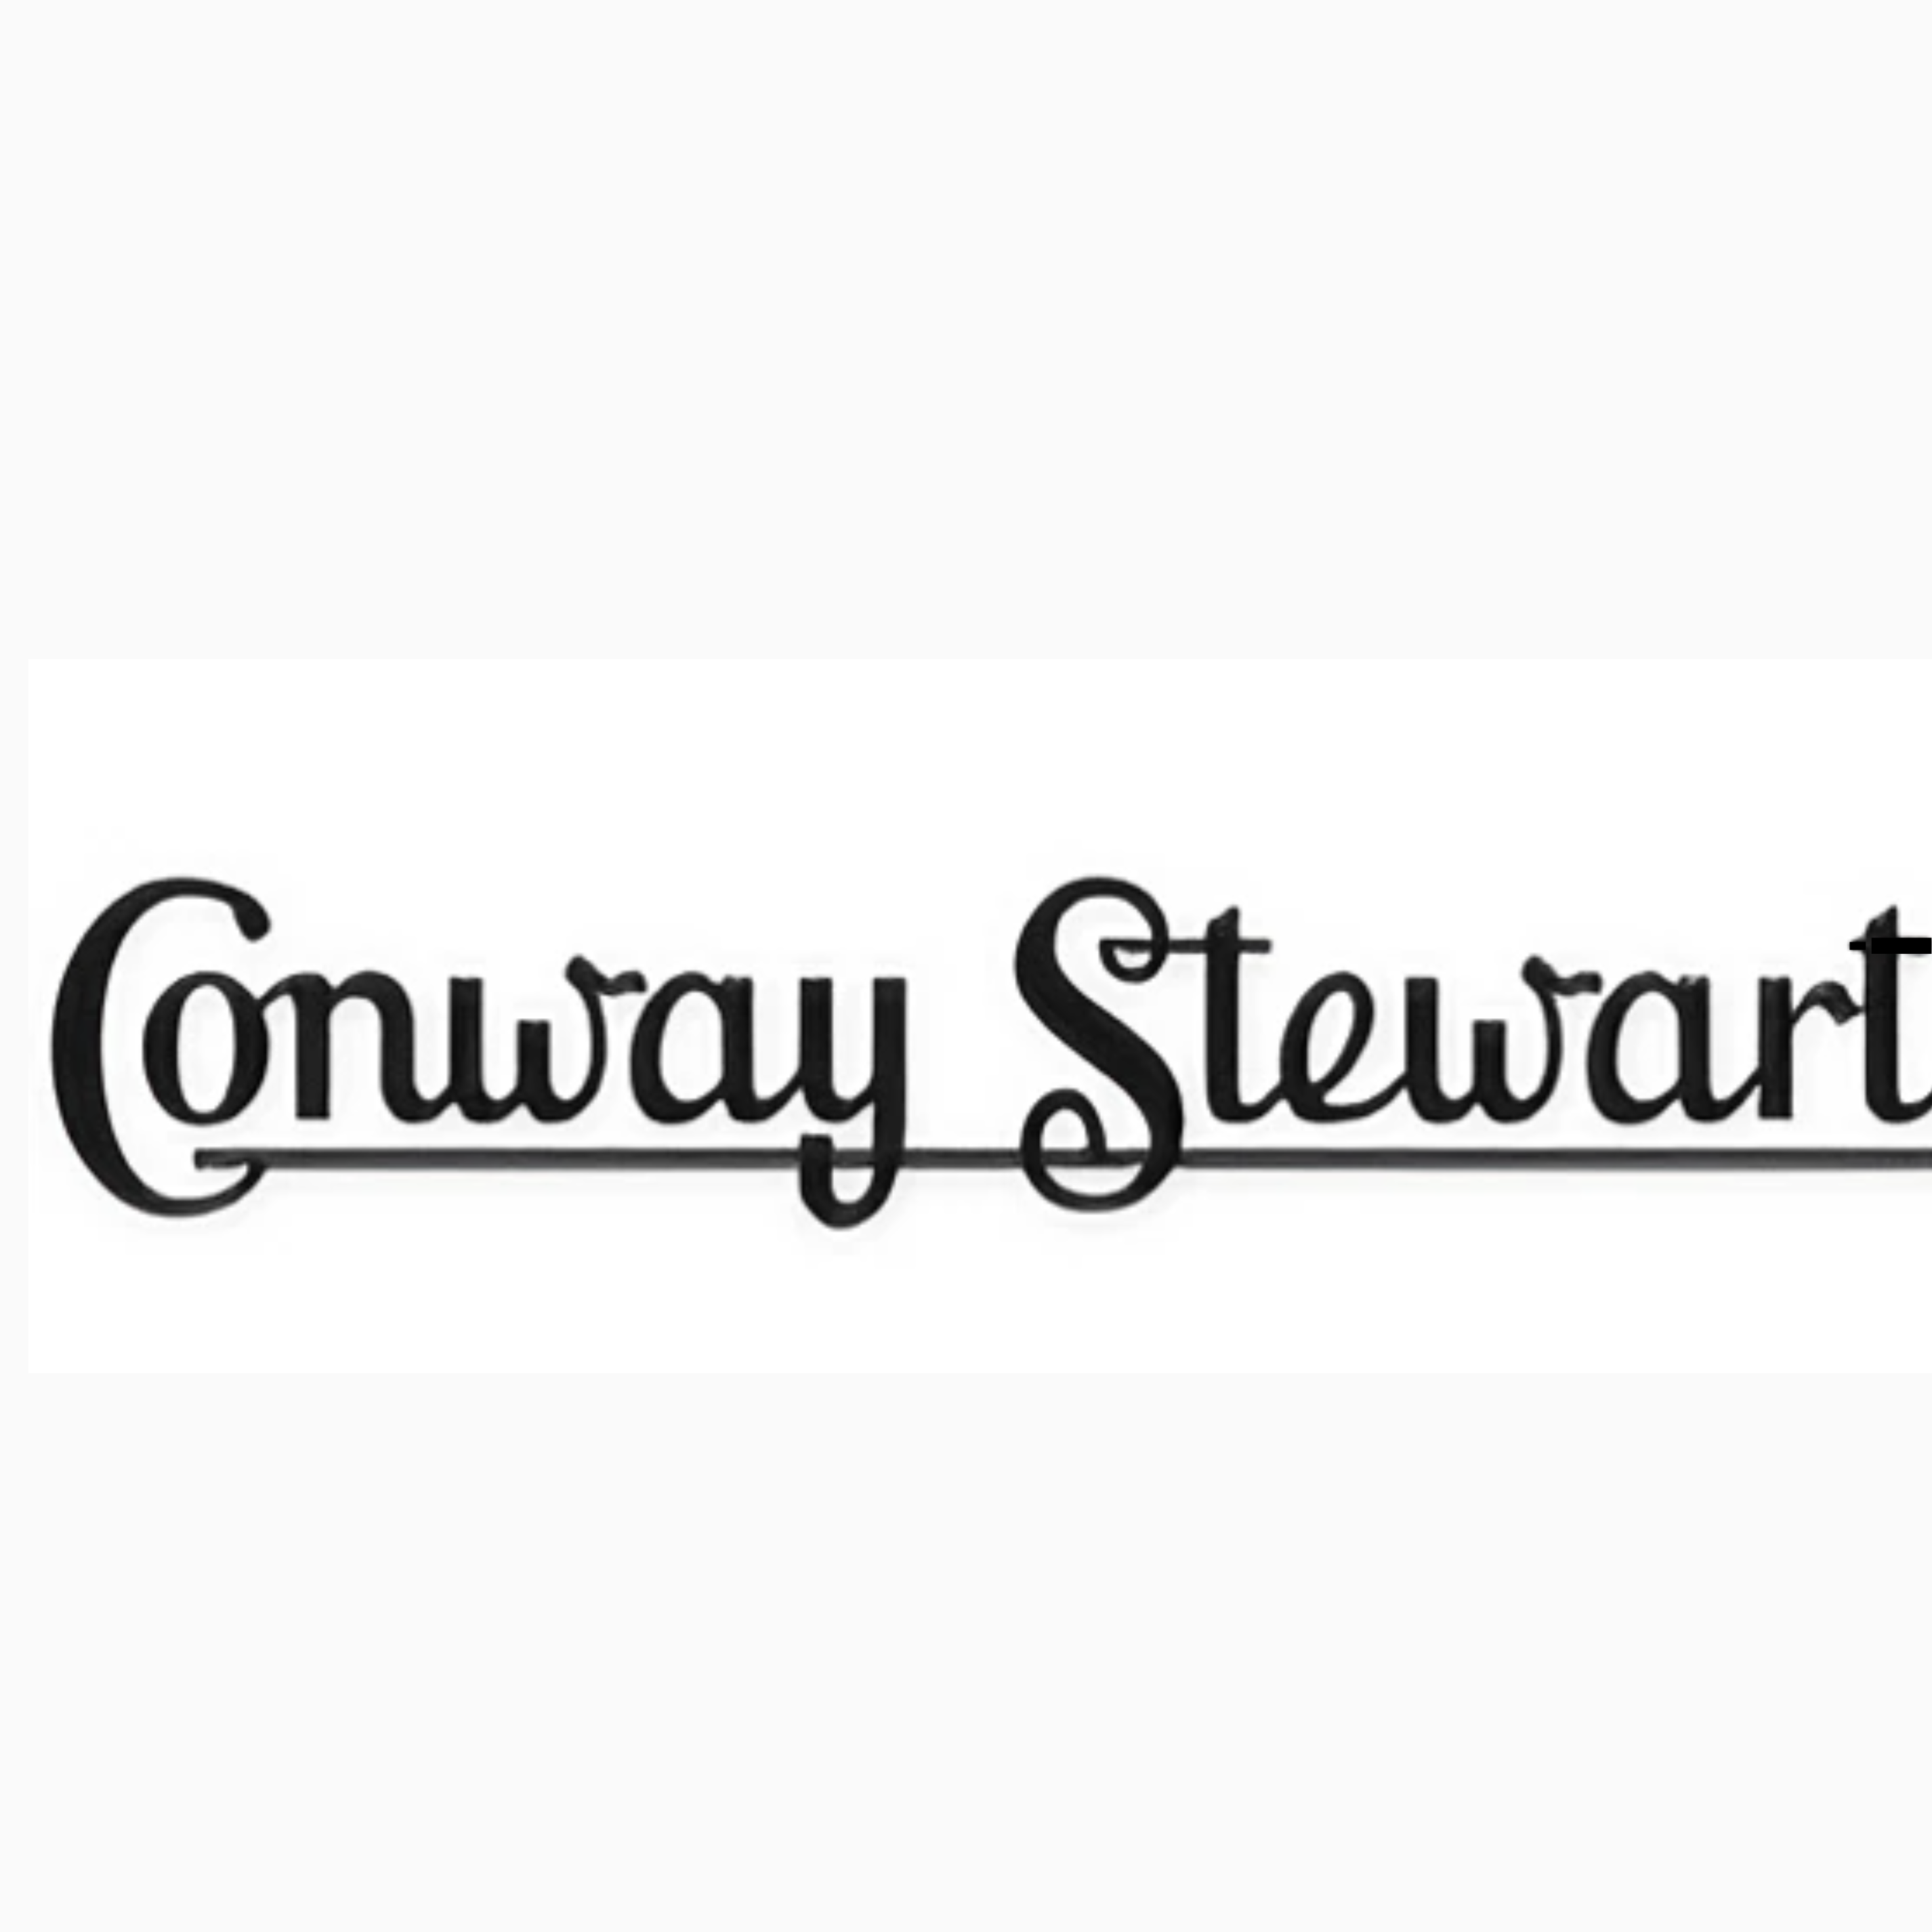 ConwayStewart24